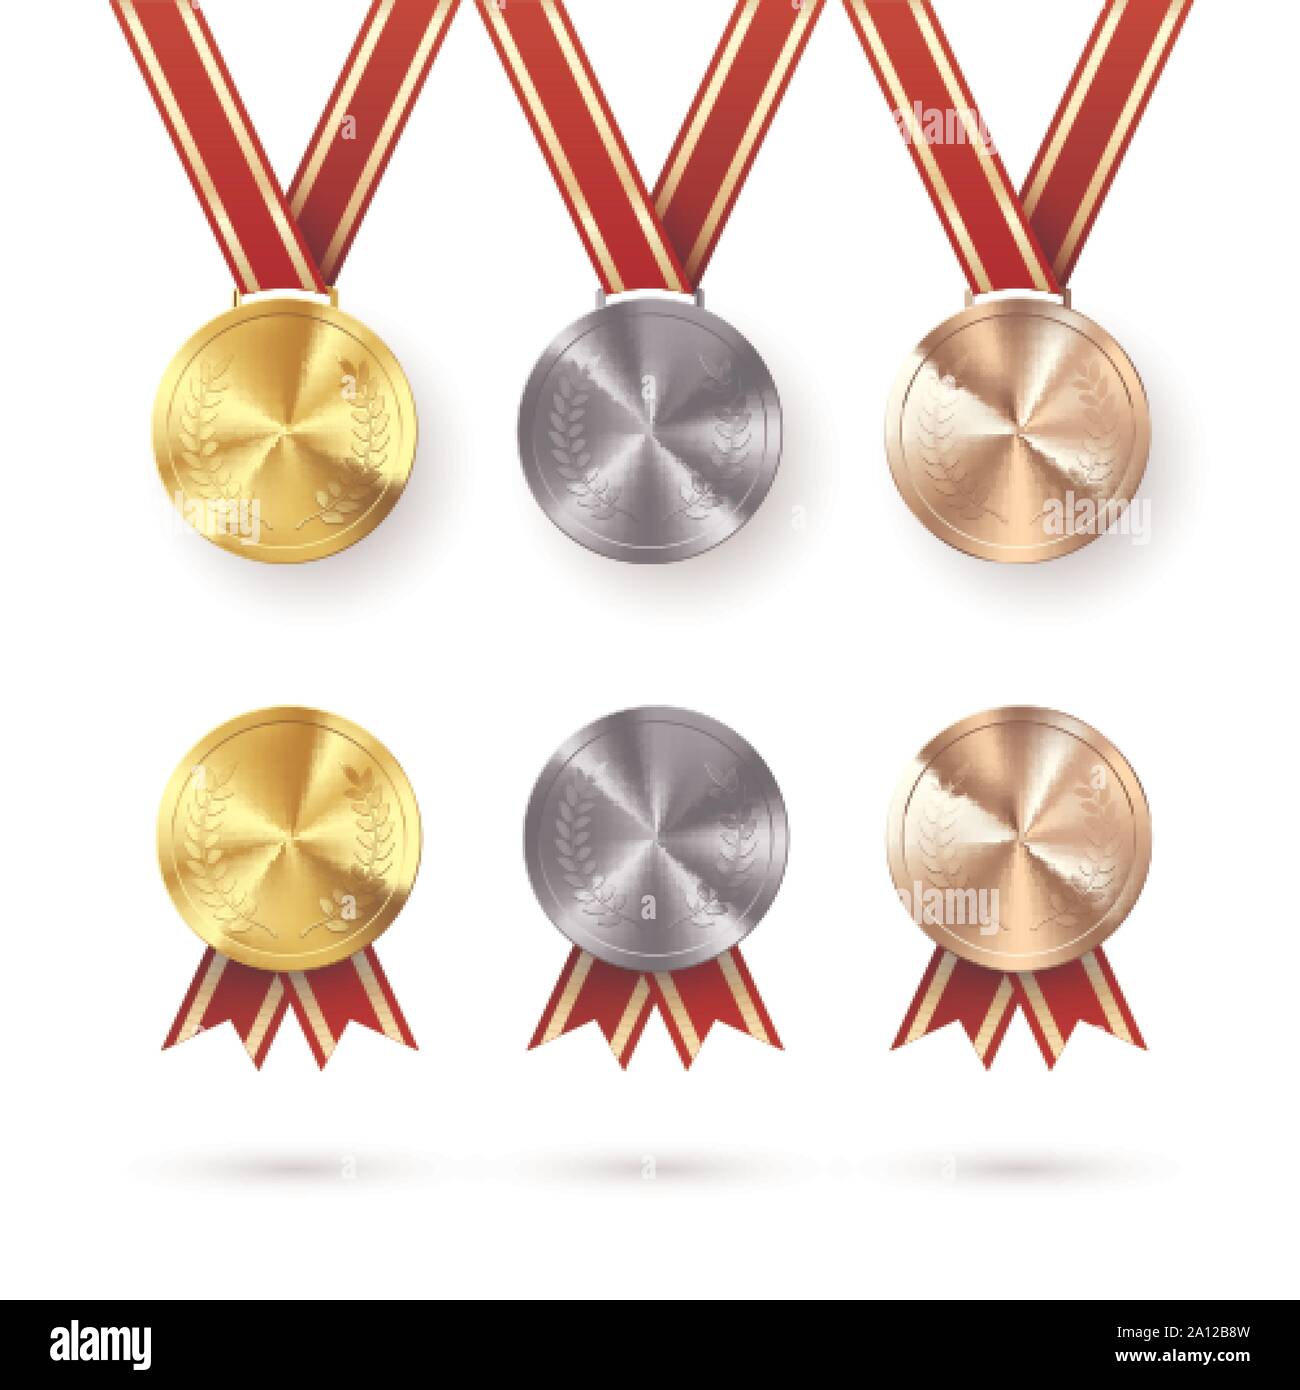 Serie di premi. Golden medaglie d'argento e di bronzo con alloro appeso sul nastro rosso. Premio simbolo di vittoria e di successo. Illustrazione di vettore isolato su Illustrazione Vettoriale